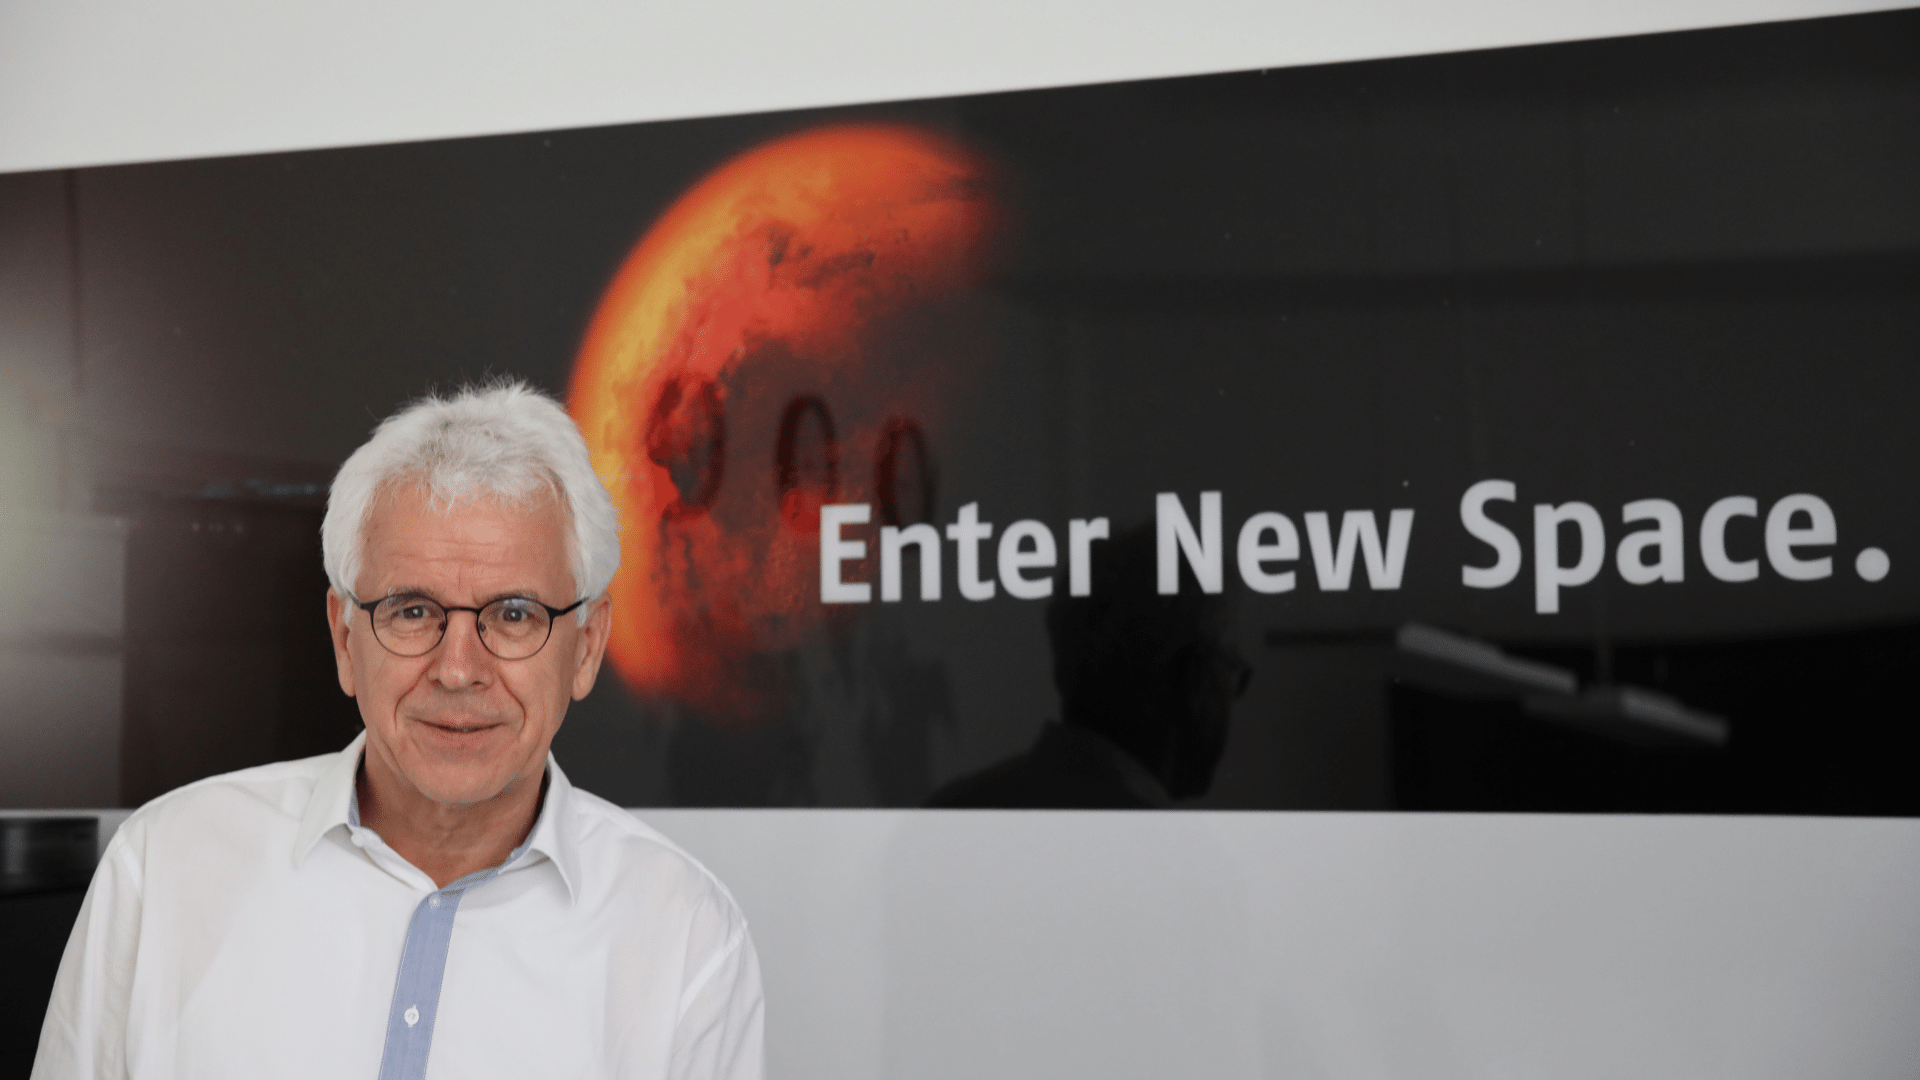 Portrait von Entwicklungsingenieur Karl-Heinz-Suphan vor einem Banner mit dem Slogan "Enter New Space." und dem Mars im Hintergrund